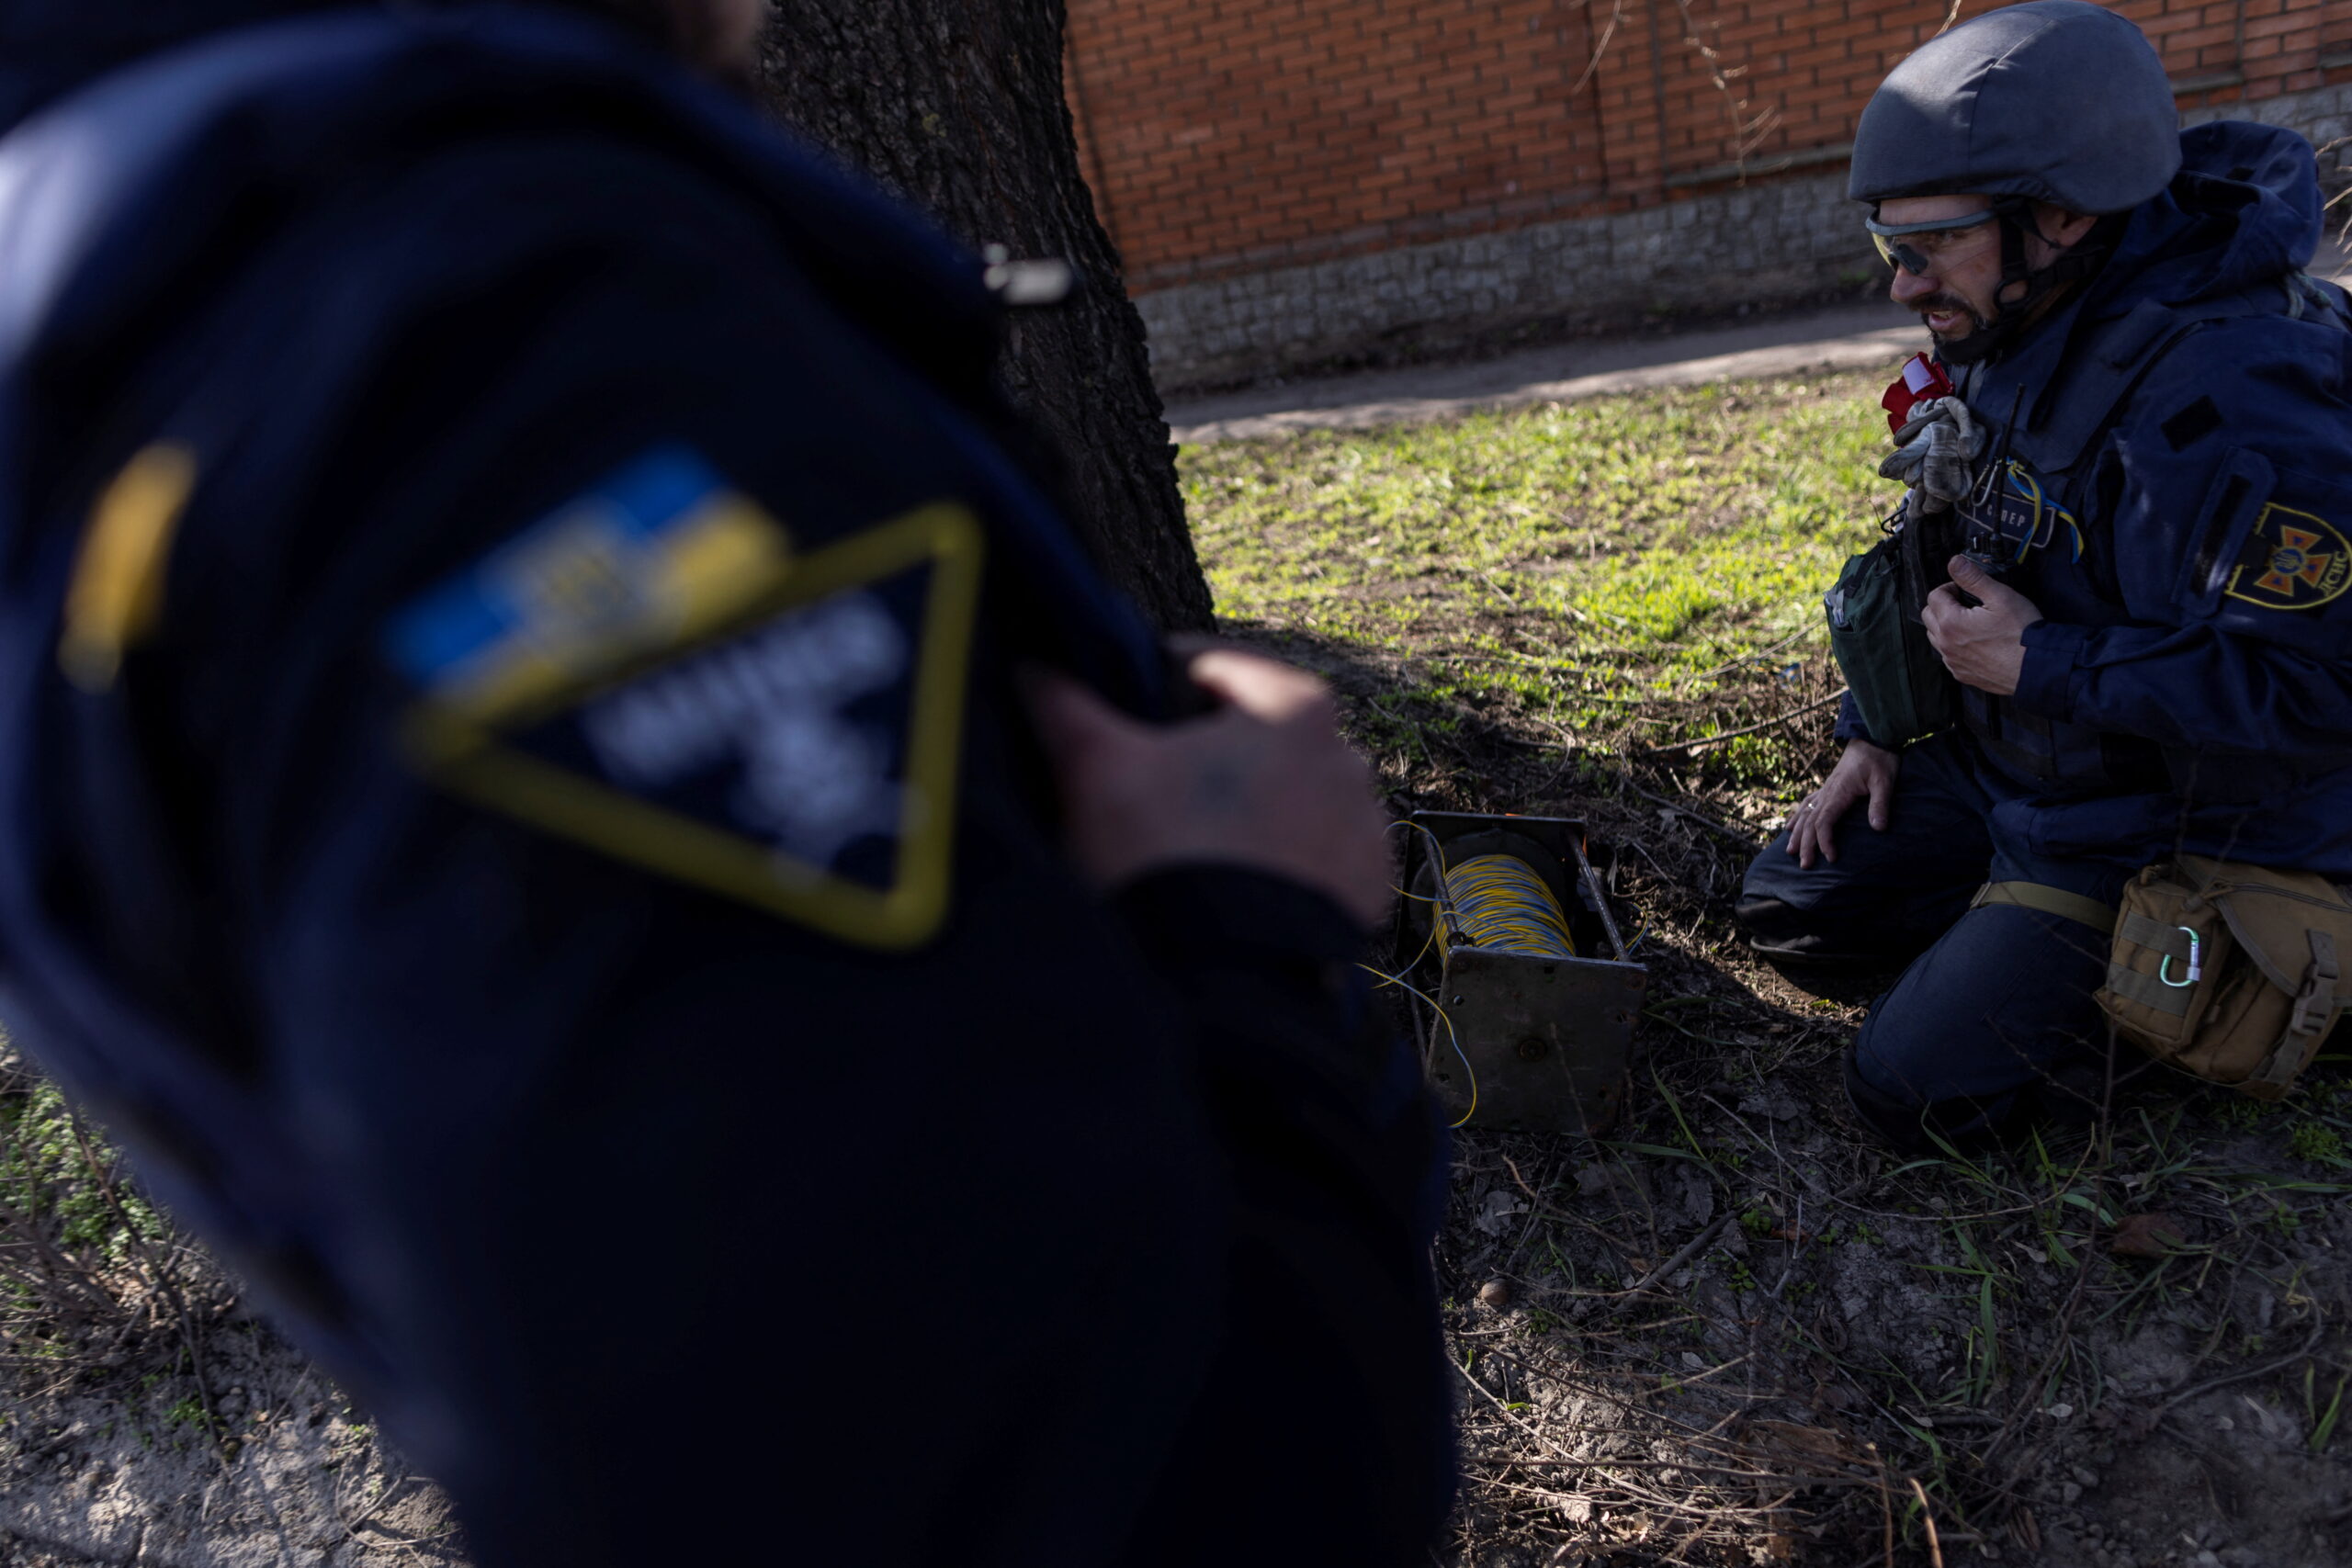 Команда по обезвреживанию бомб проводит управляемый взрыв неразорвавшихся боеприпасов в Харькове. Украина, 11 апреля 2022 г. © Alkis Konstantinidis / Reuters / Scanpix / Leta